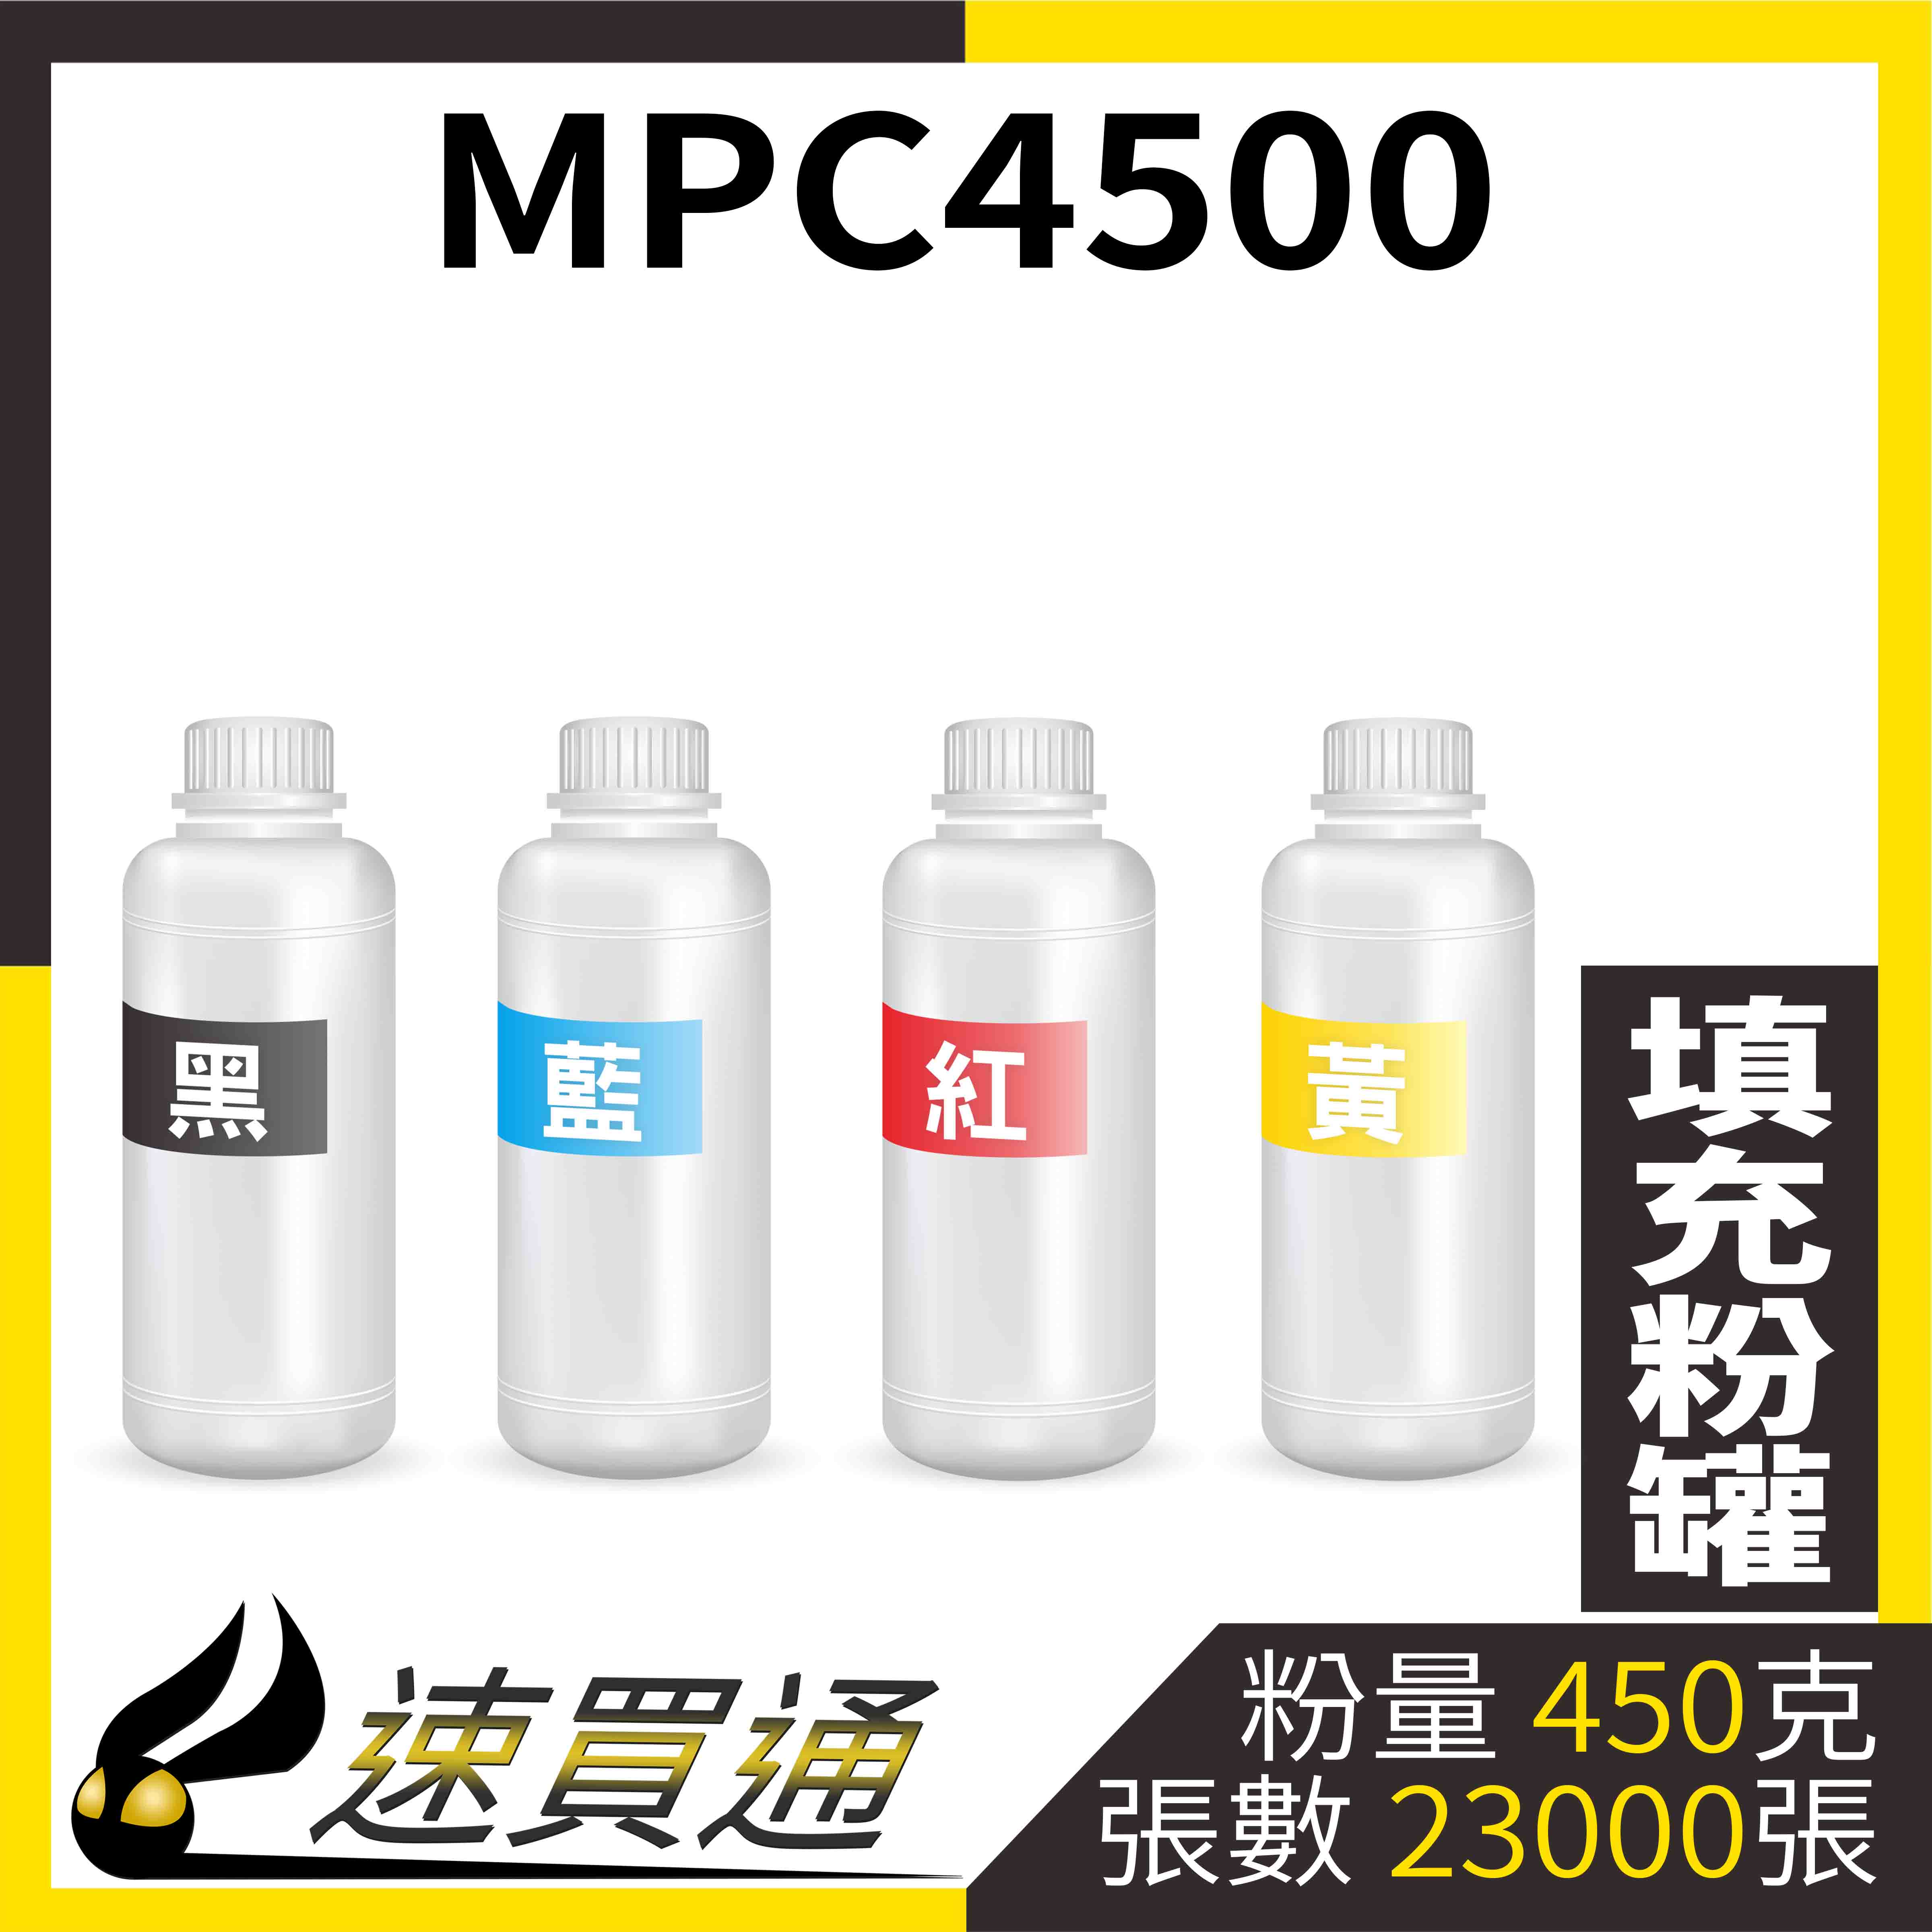 【速買通】RICOH MPC4500 四色綜合 填充式碳粉罐